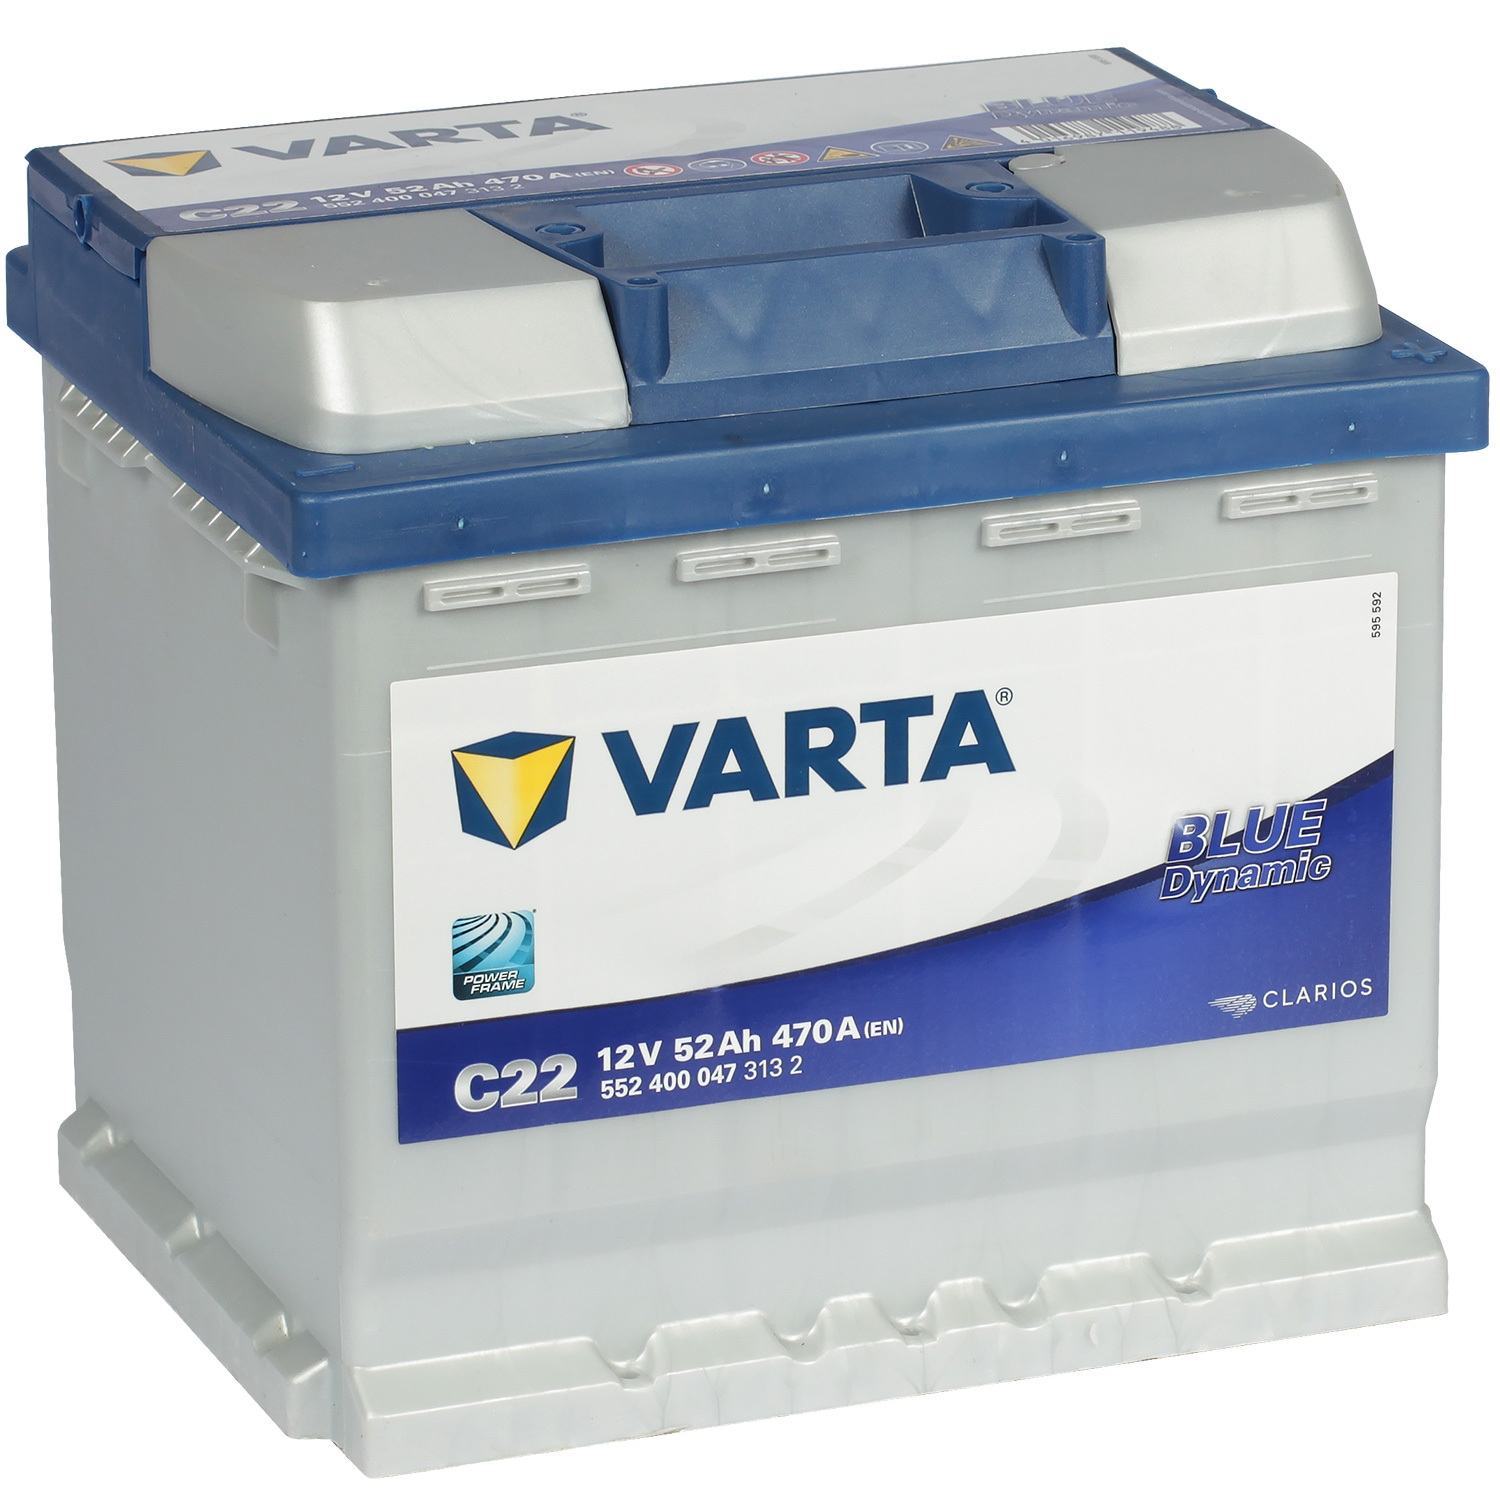 Varta Автомобильный аккумулятор Varta Blue Dynamic C22 52 Ач обратная полярность L1 varta автомобильный аккумулятор varta silver dynamic c30 54 ач обратная полярность l1